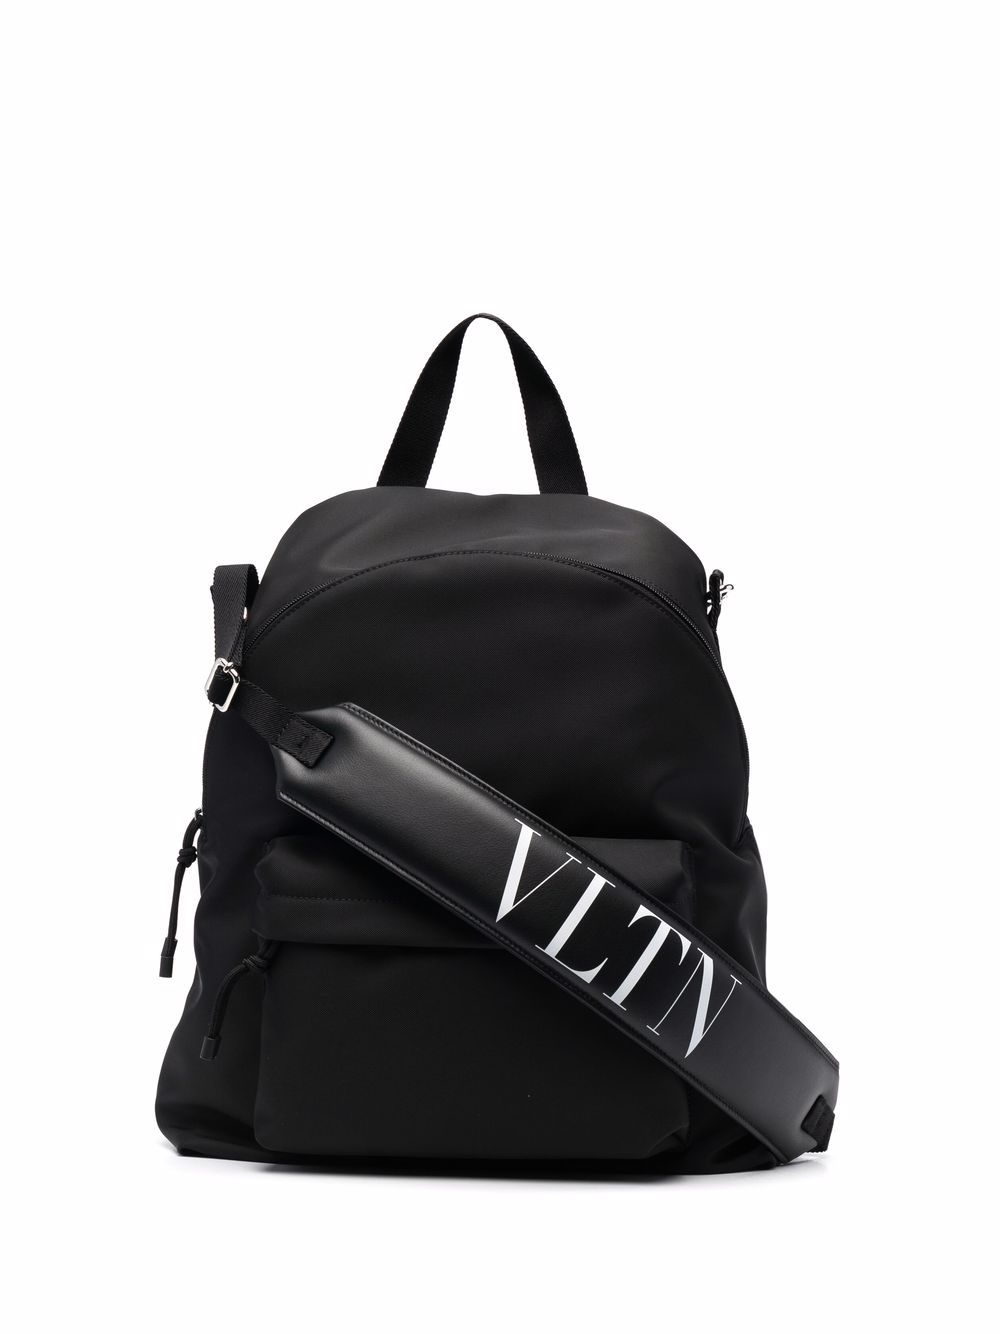 фото Valentino garavani рюкзак с логотипом